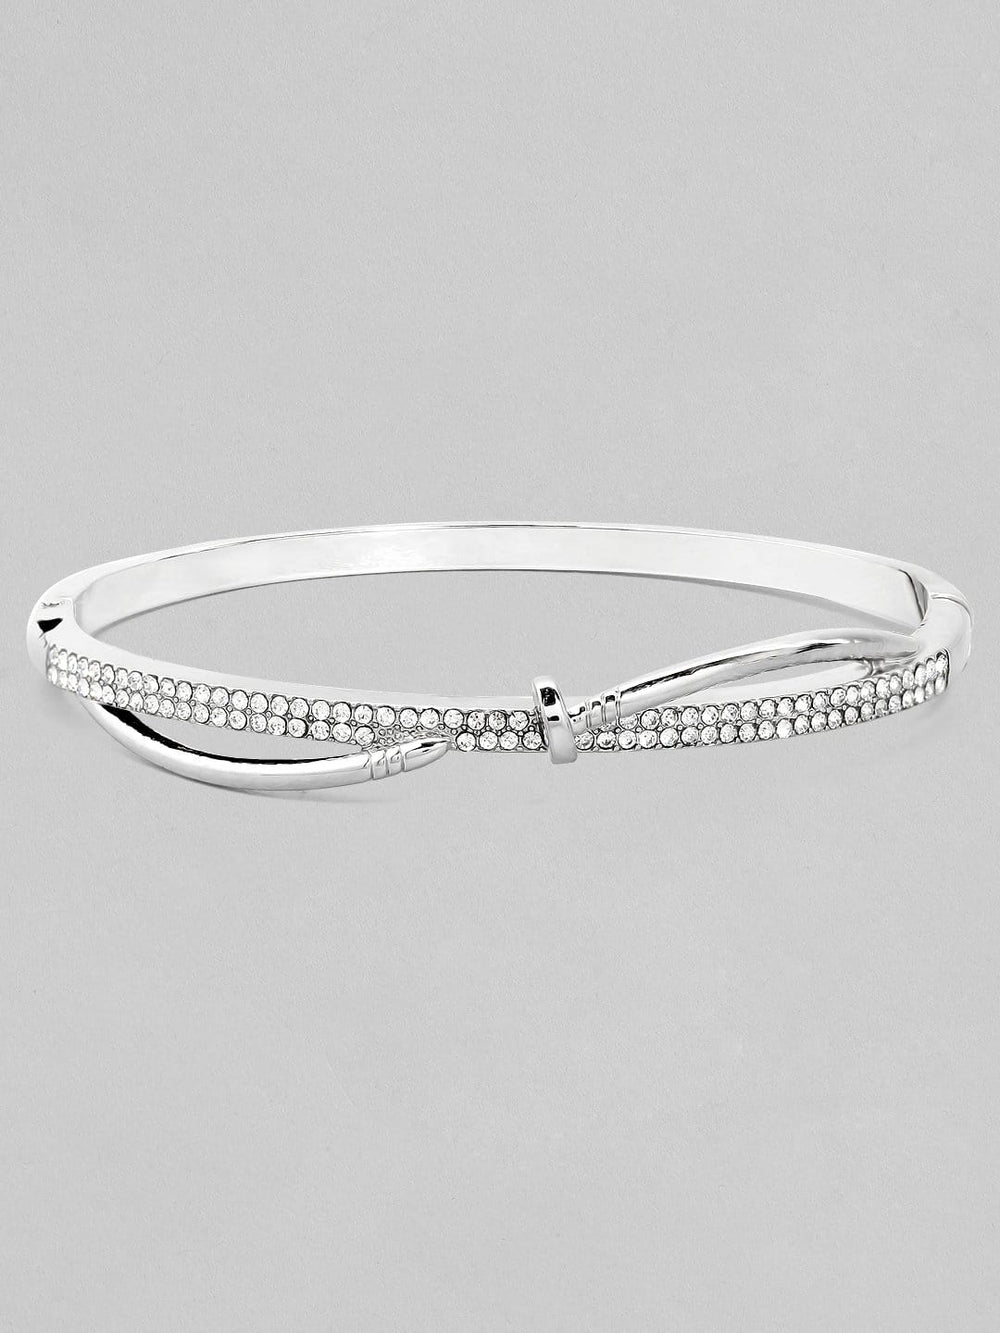 Rubans Zircon Studded Silver Plated Handcrafted Bracelet Bangles & Bracelets